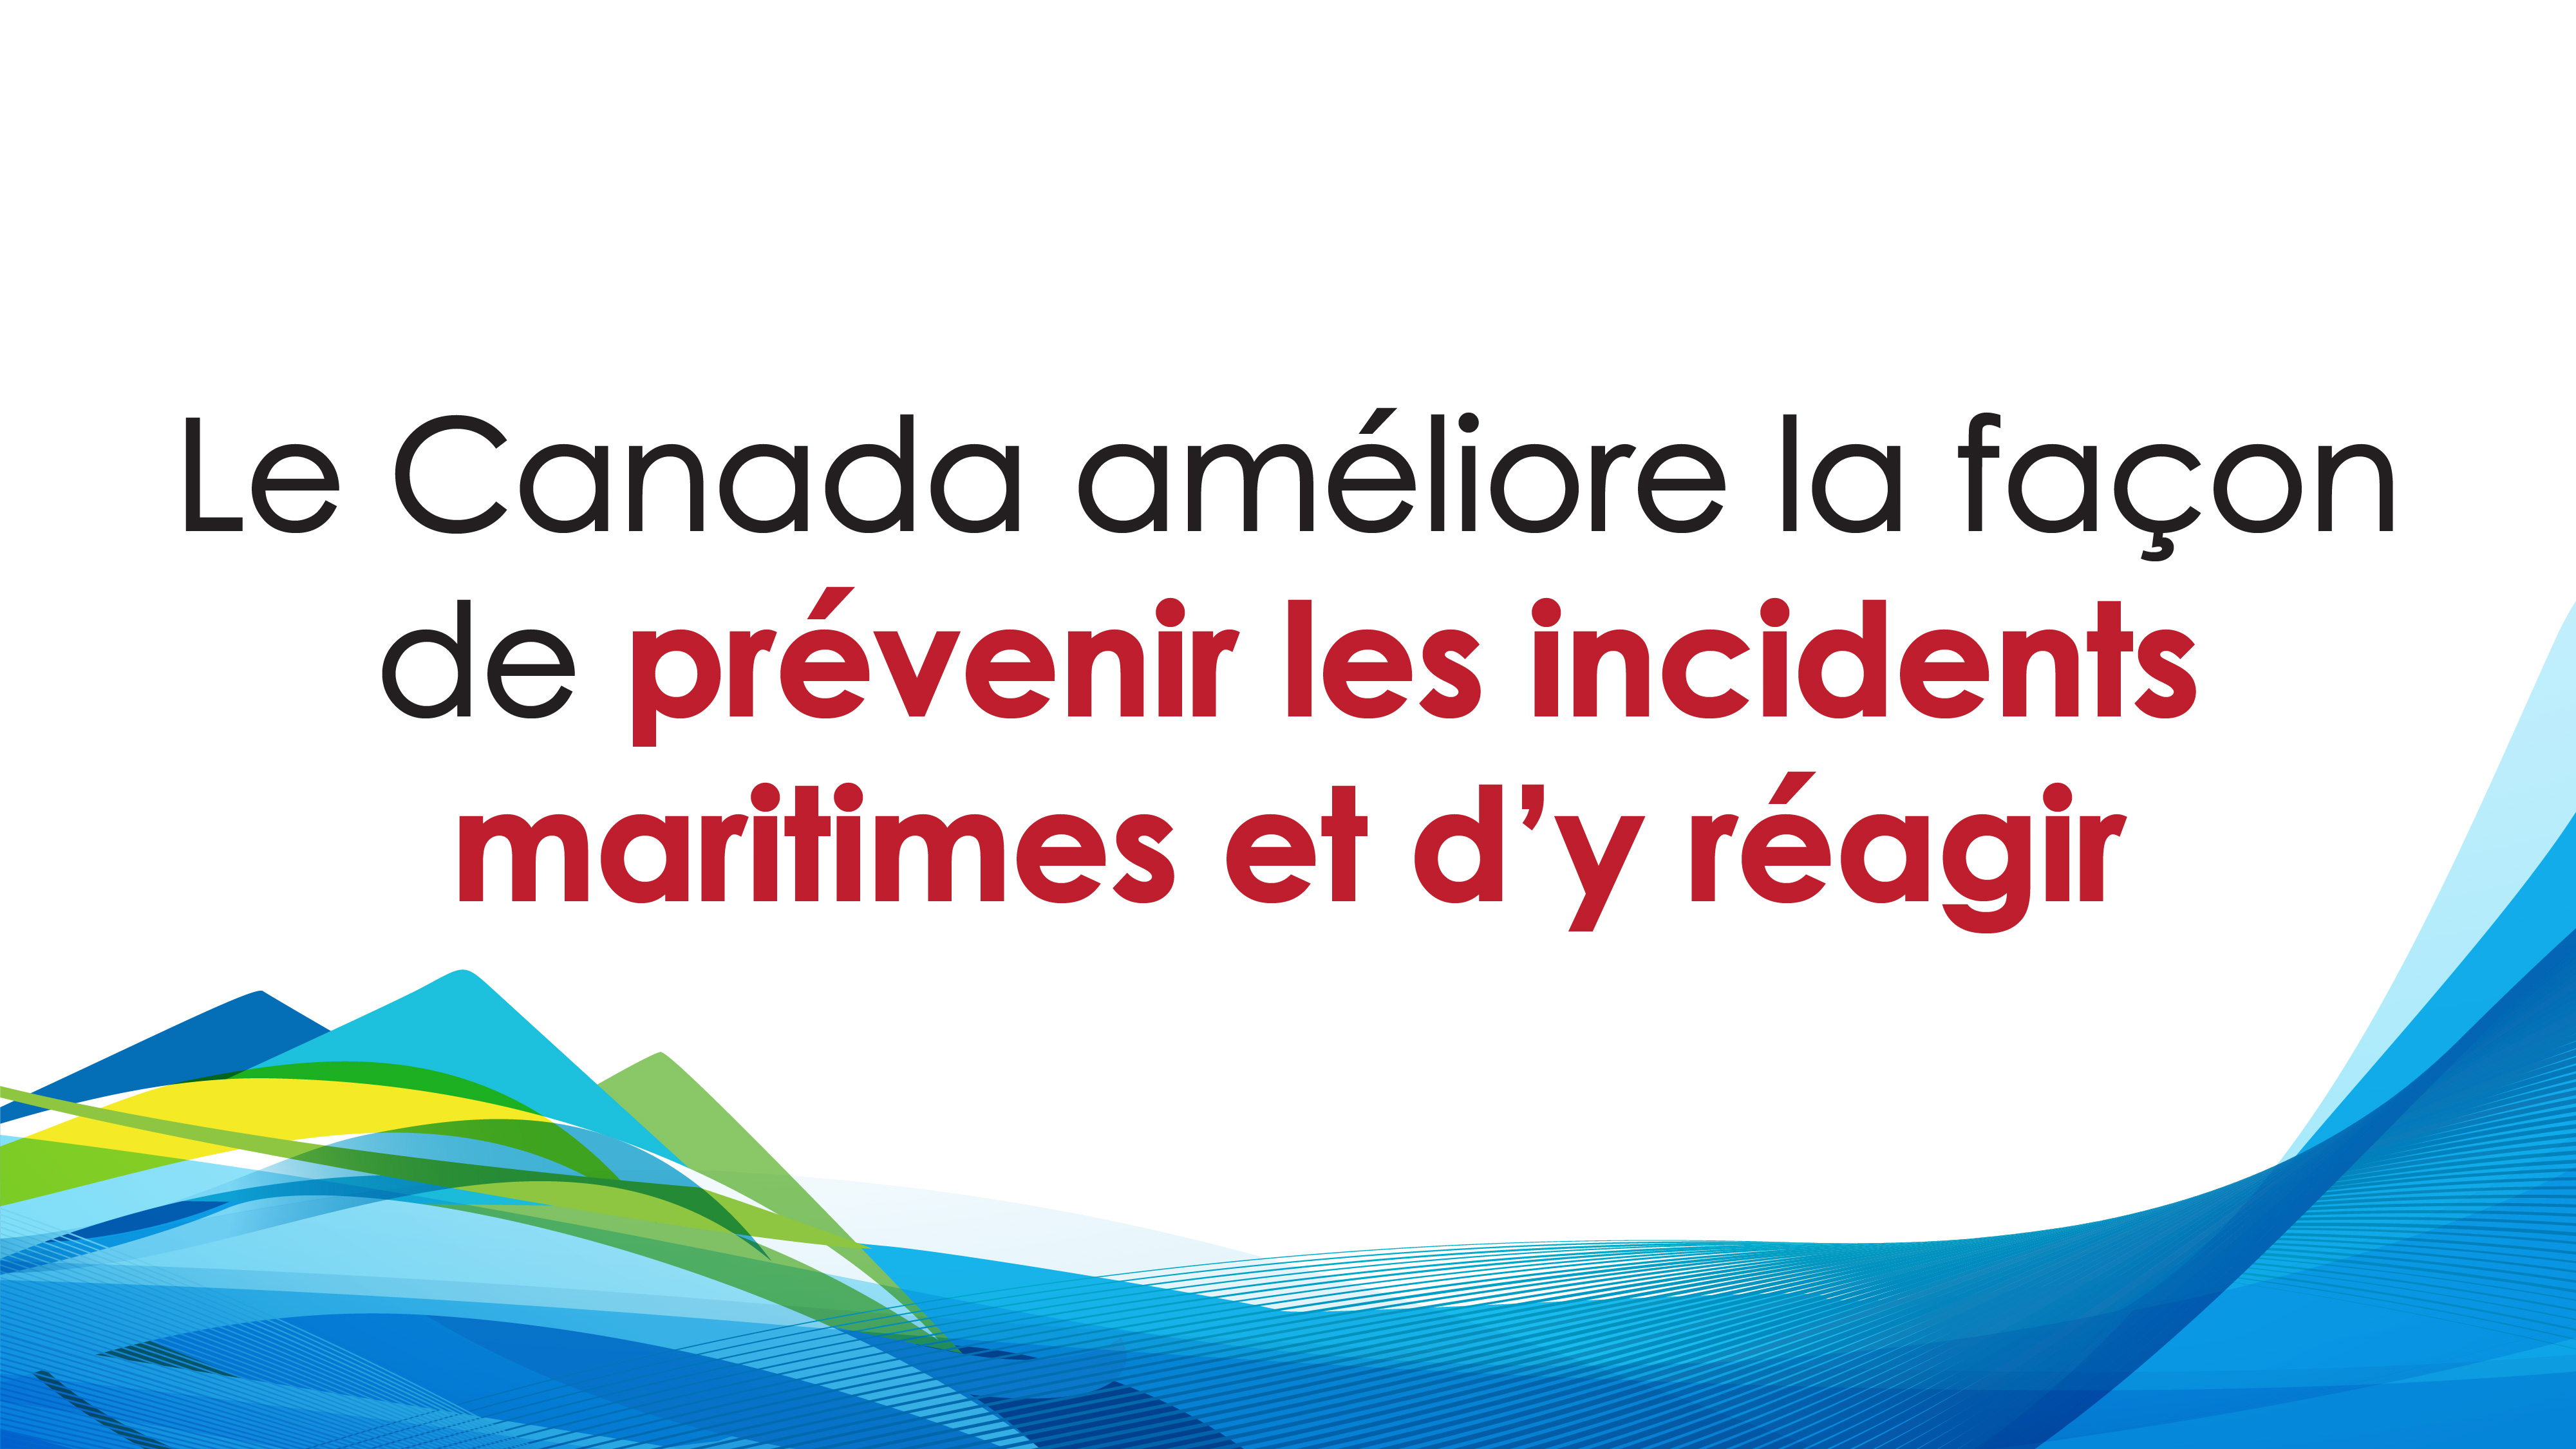 Le Canada améliore la façon de prévenir les incidents maritimes et d’y réagir